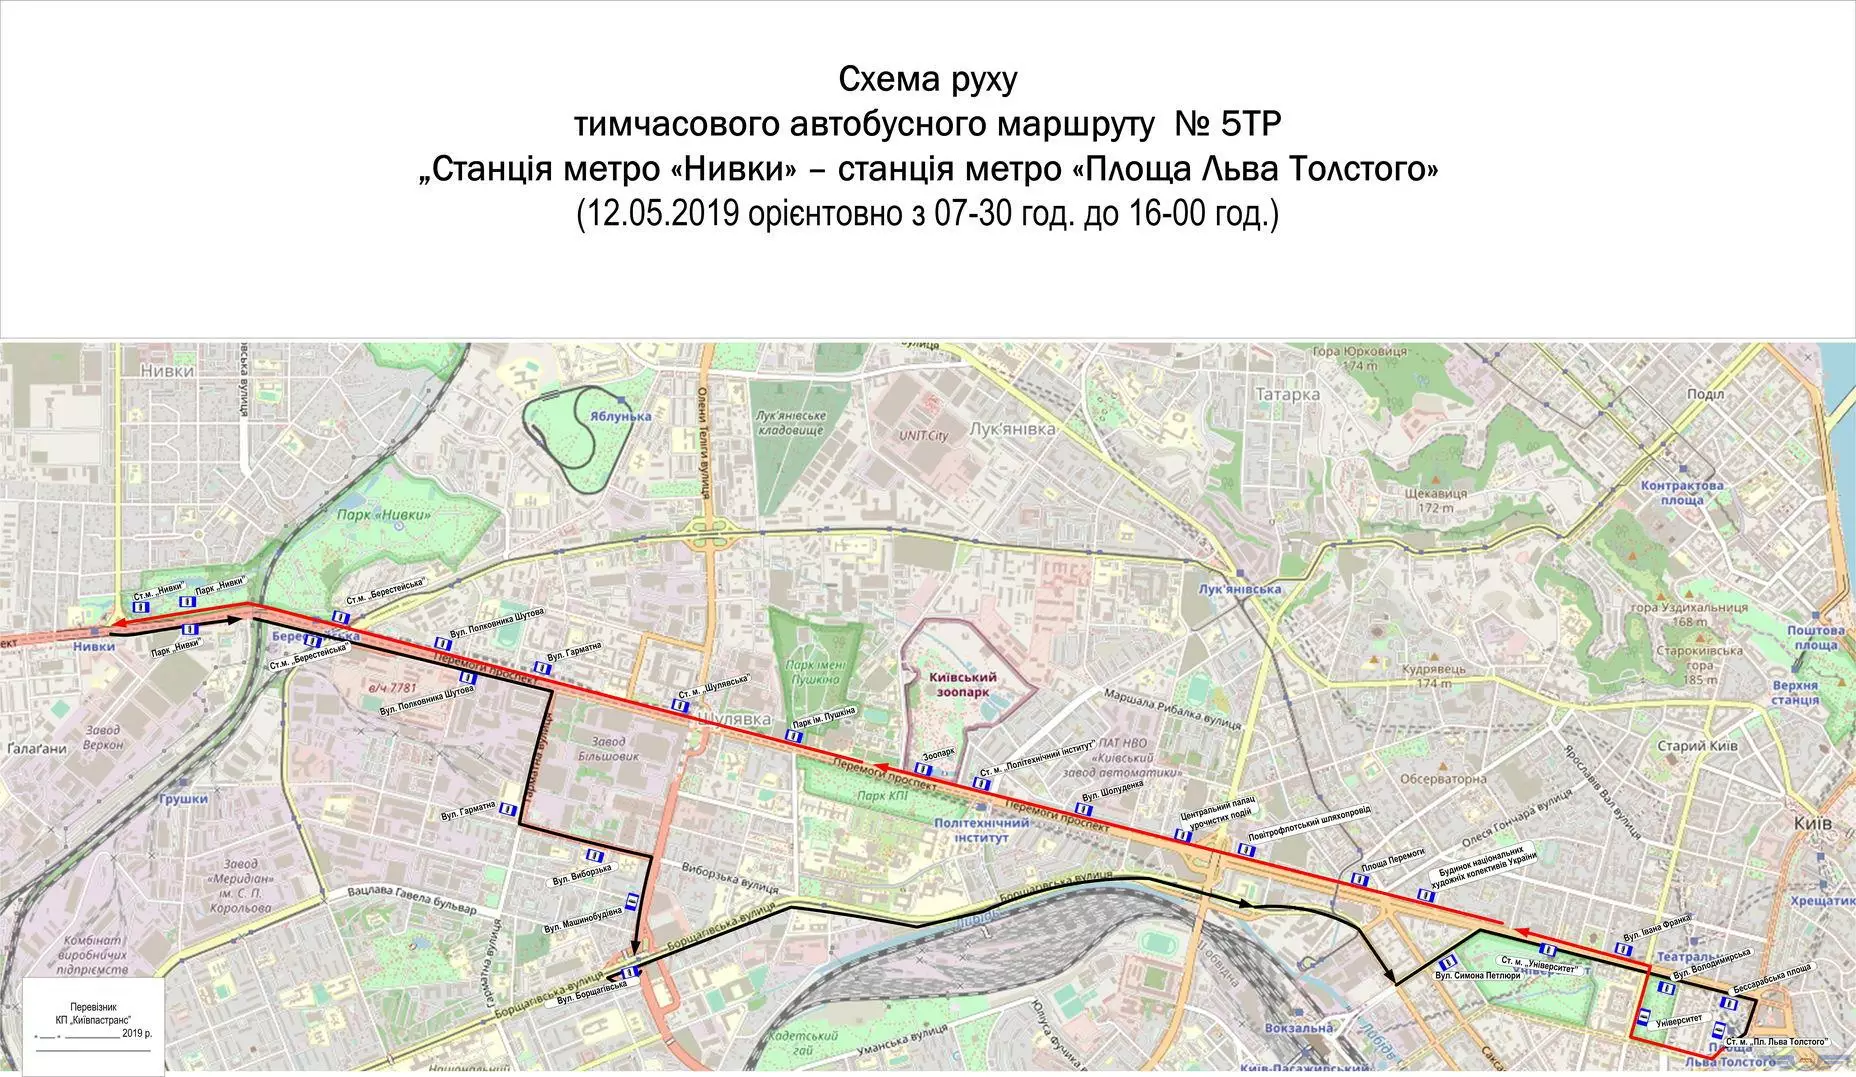 Схема временного автобусного маршрута № 5ТР. Данные: "Киевпасстранс"